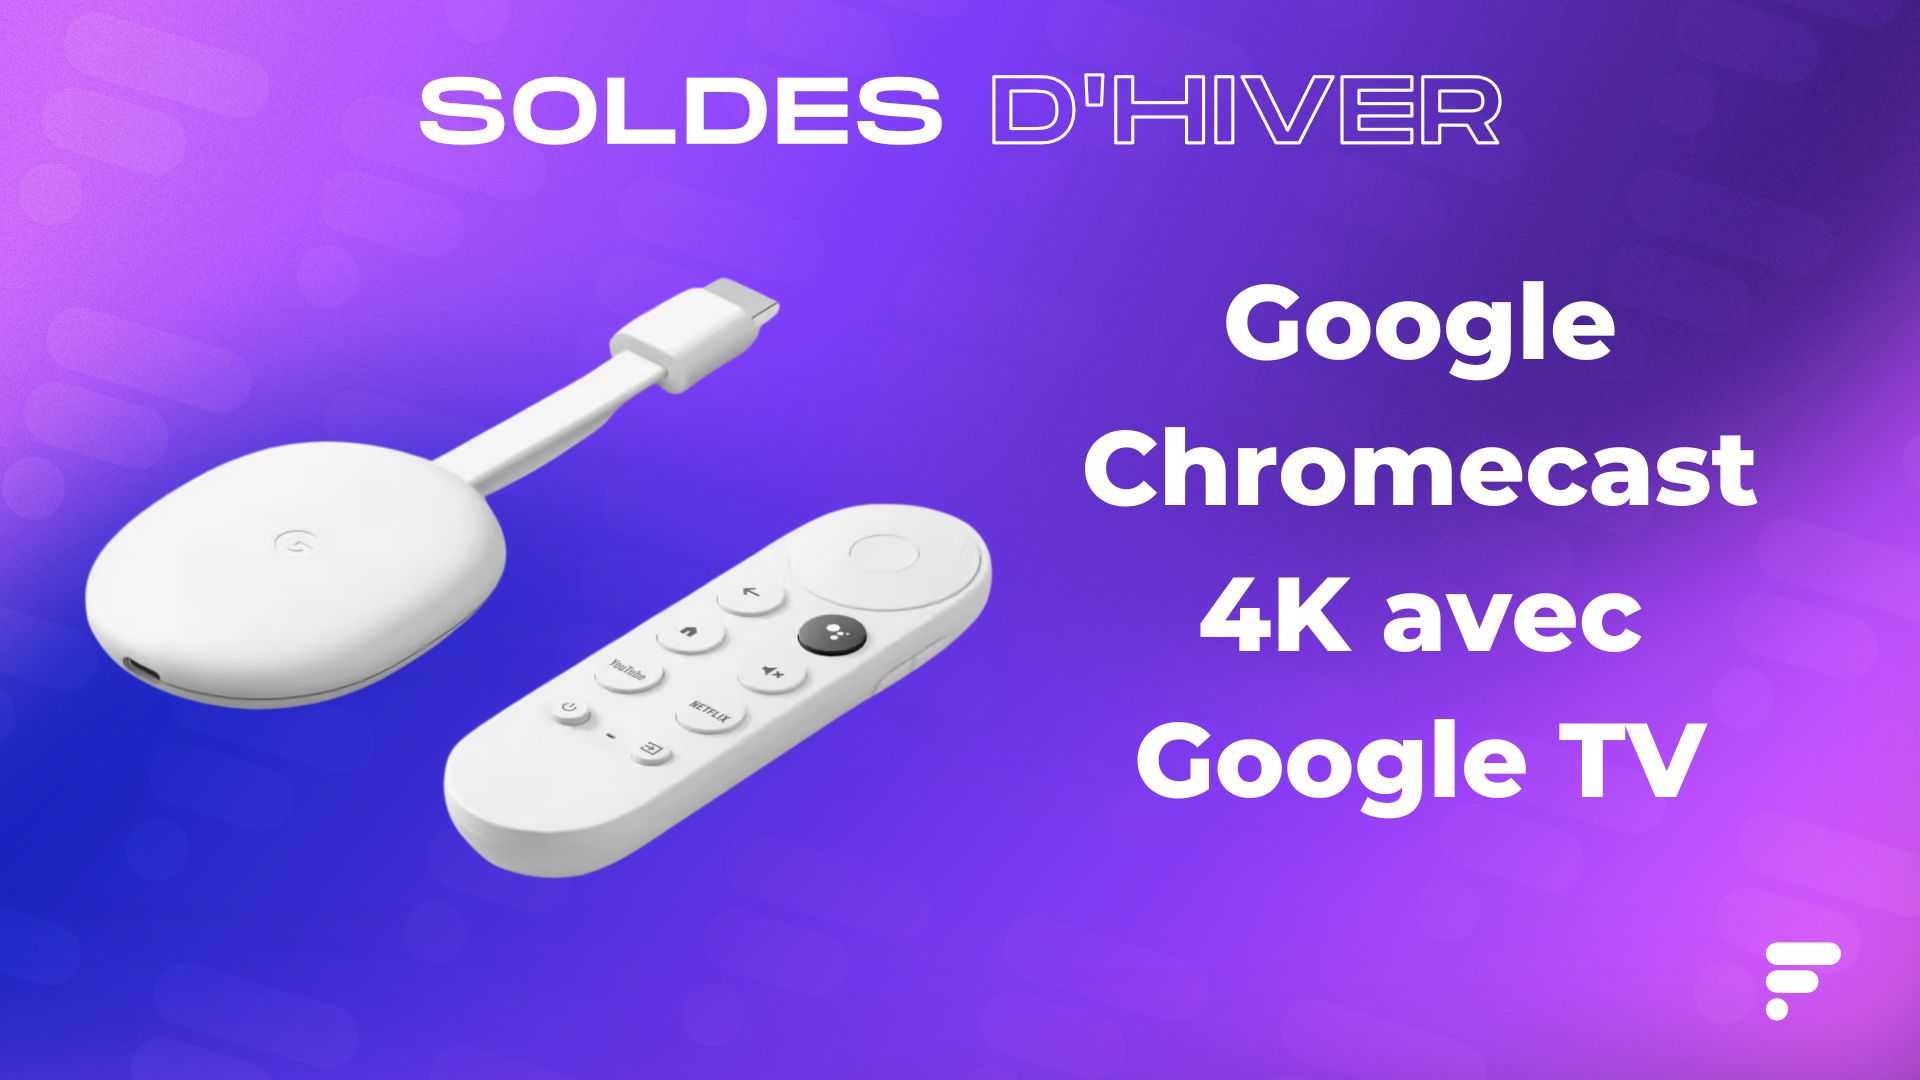 Le Chromecast avec Google TV (version 4K) n'a jamais été aussi peu